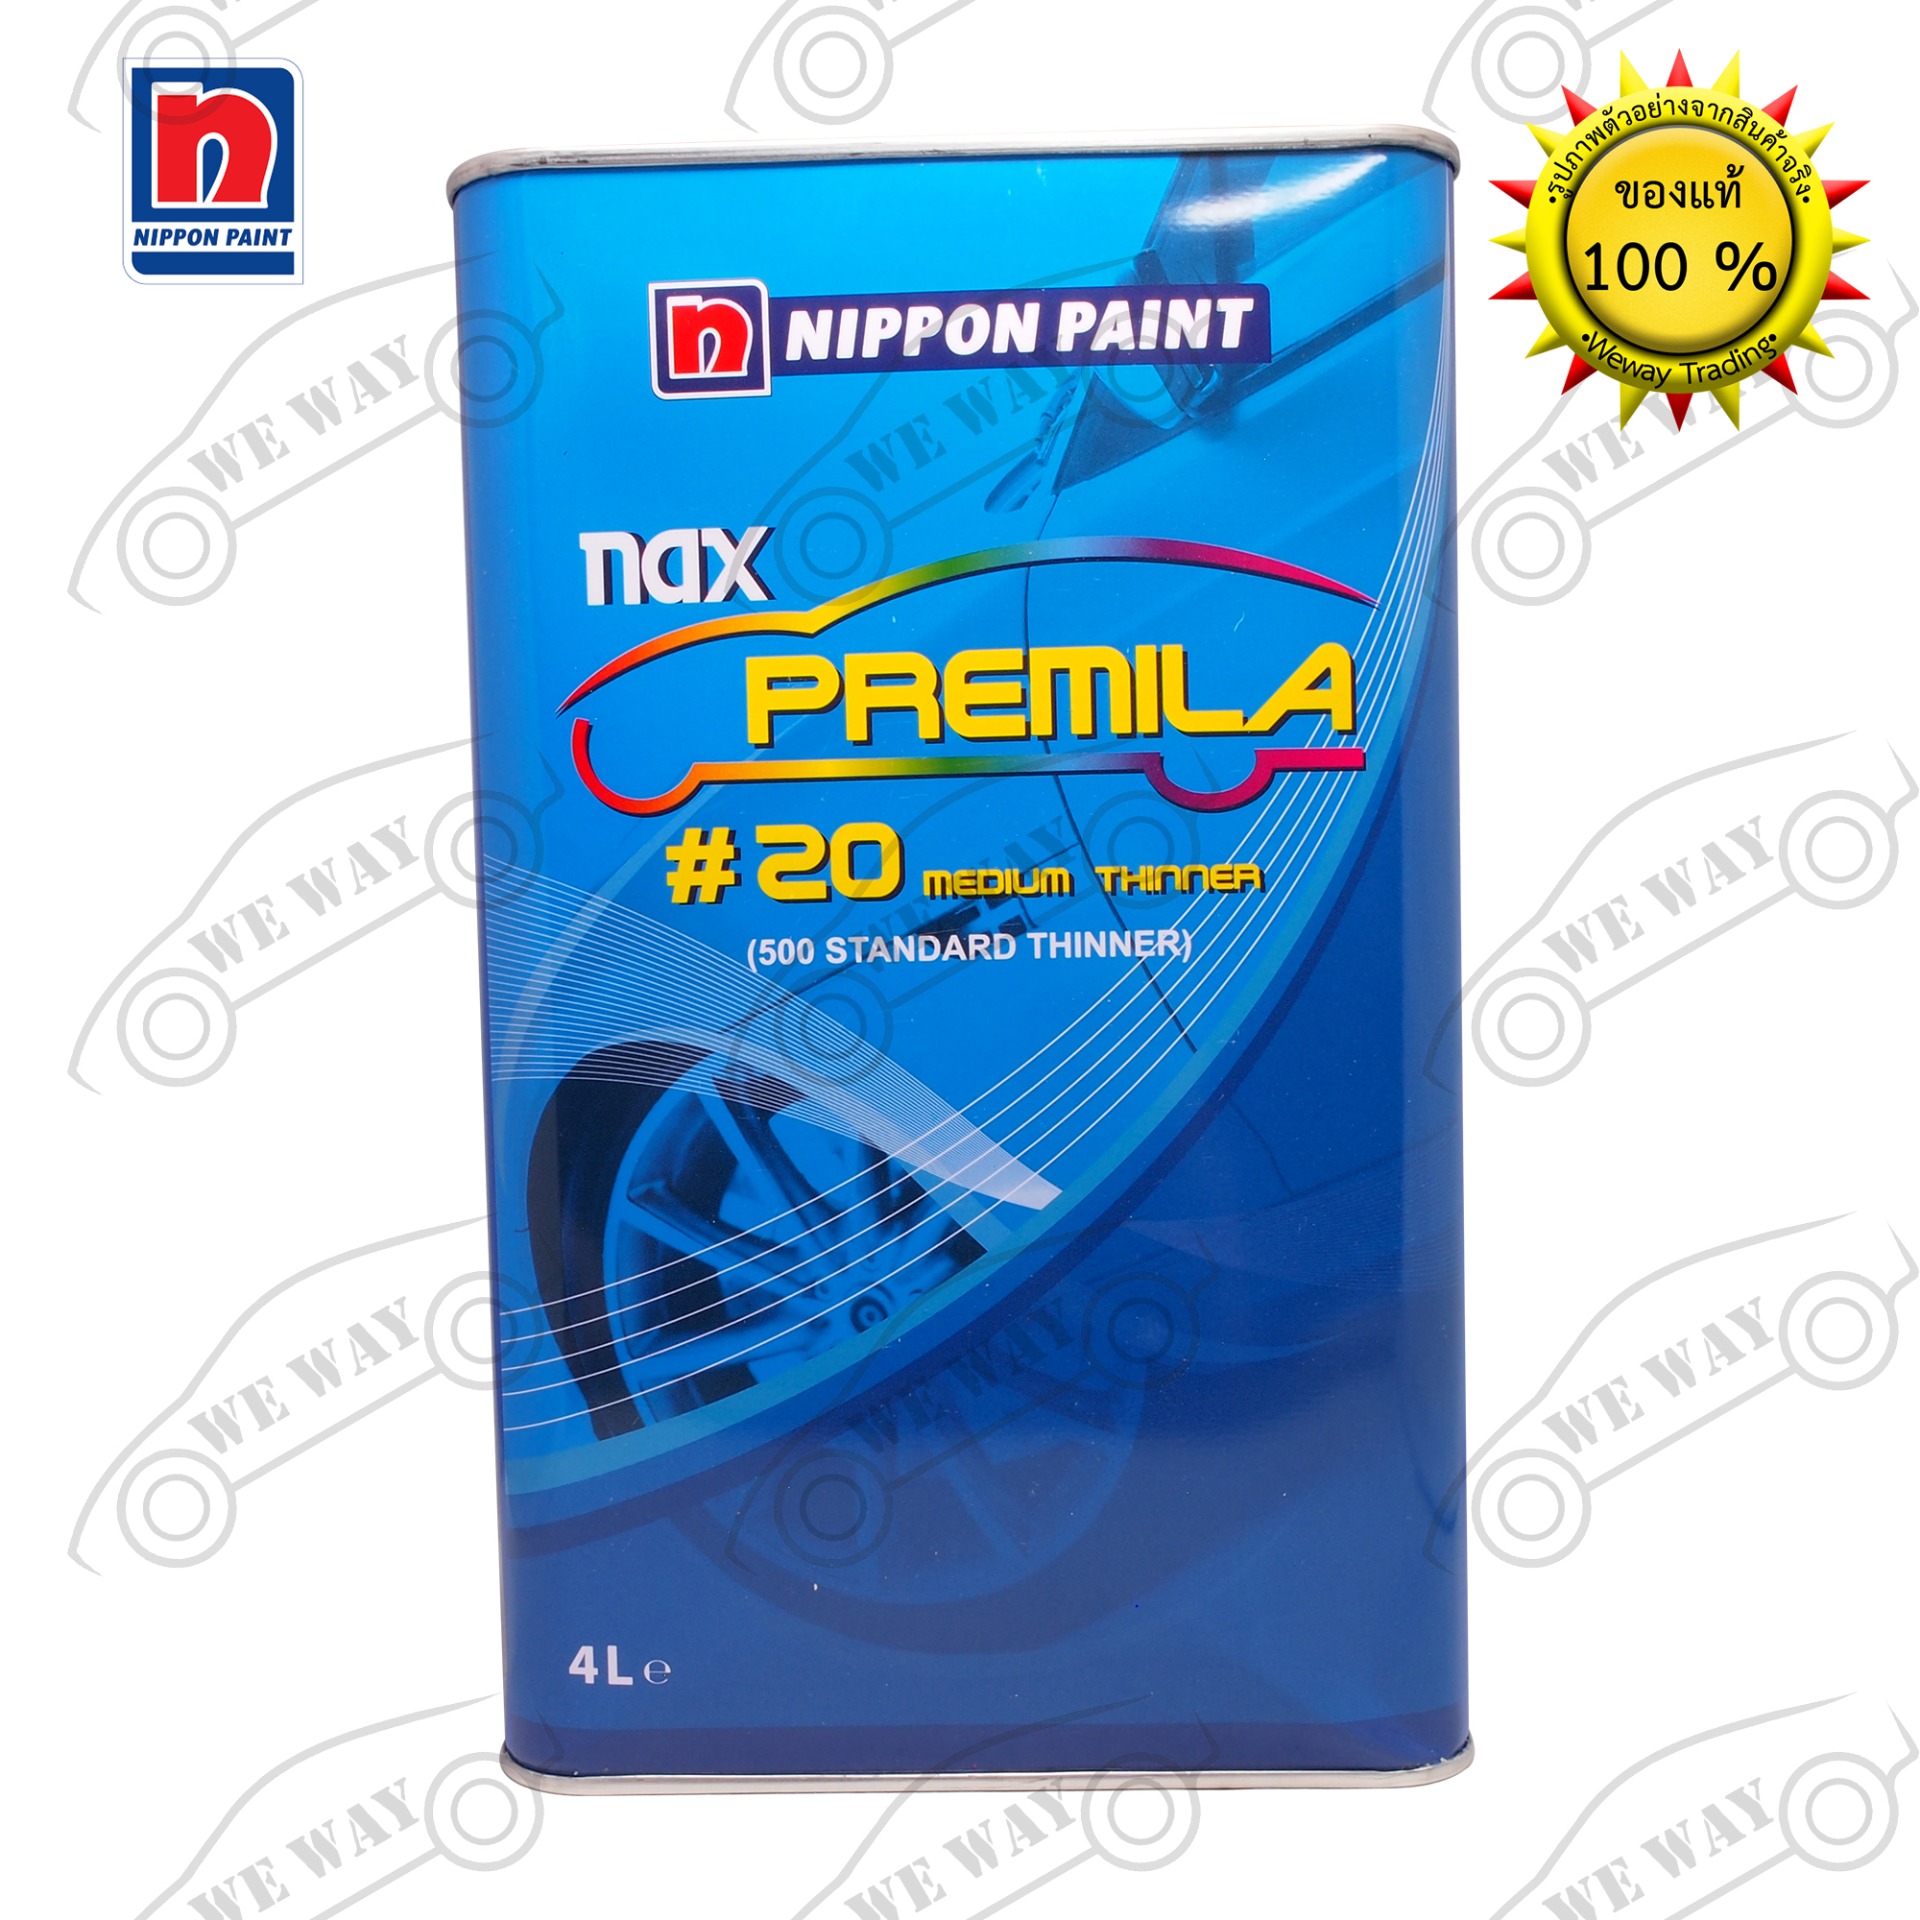 ทินเนอร์ 2K Nax Premila(แนกซ์ พรีมิล่า) #20 มีเดียม ทินเนอร์ ขนาด 4 ลิตร ทินเนอร์ผสมสี ทินเนอร์ผสมสี2K ซ